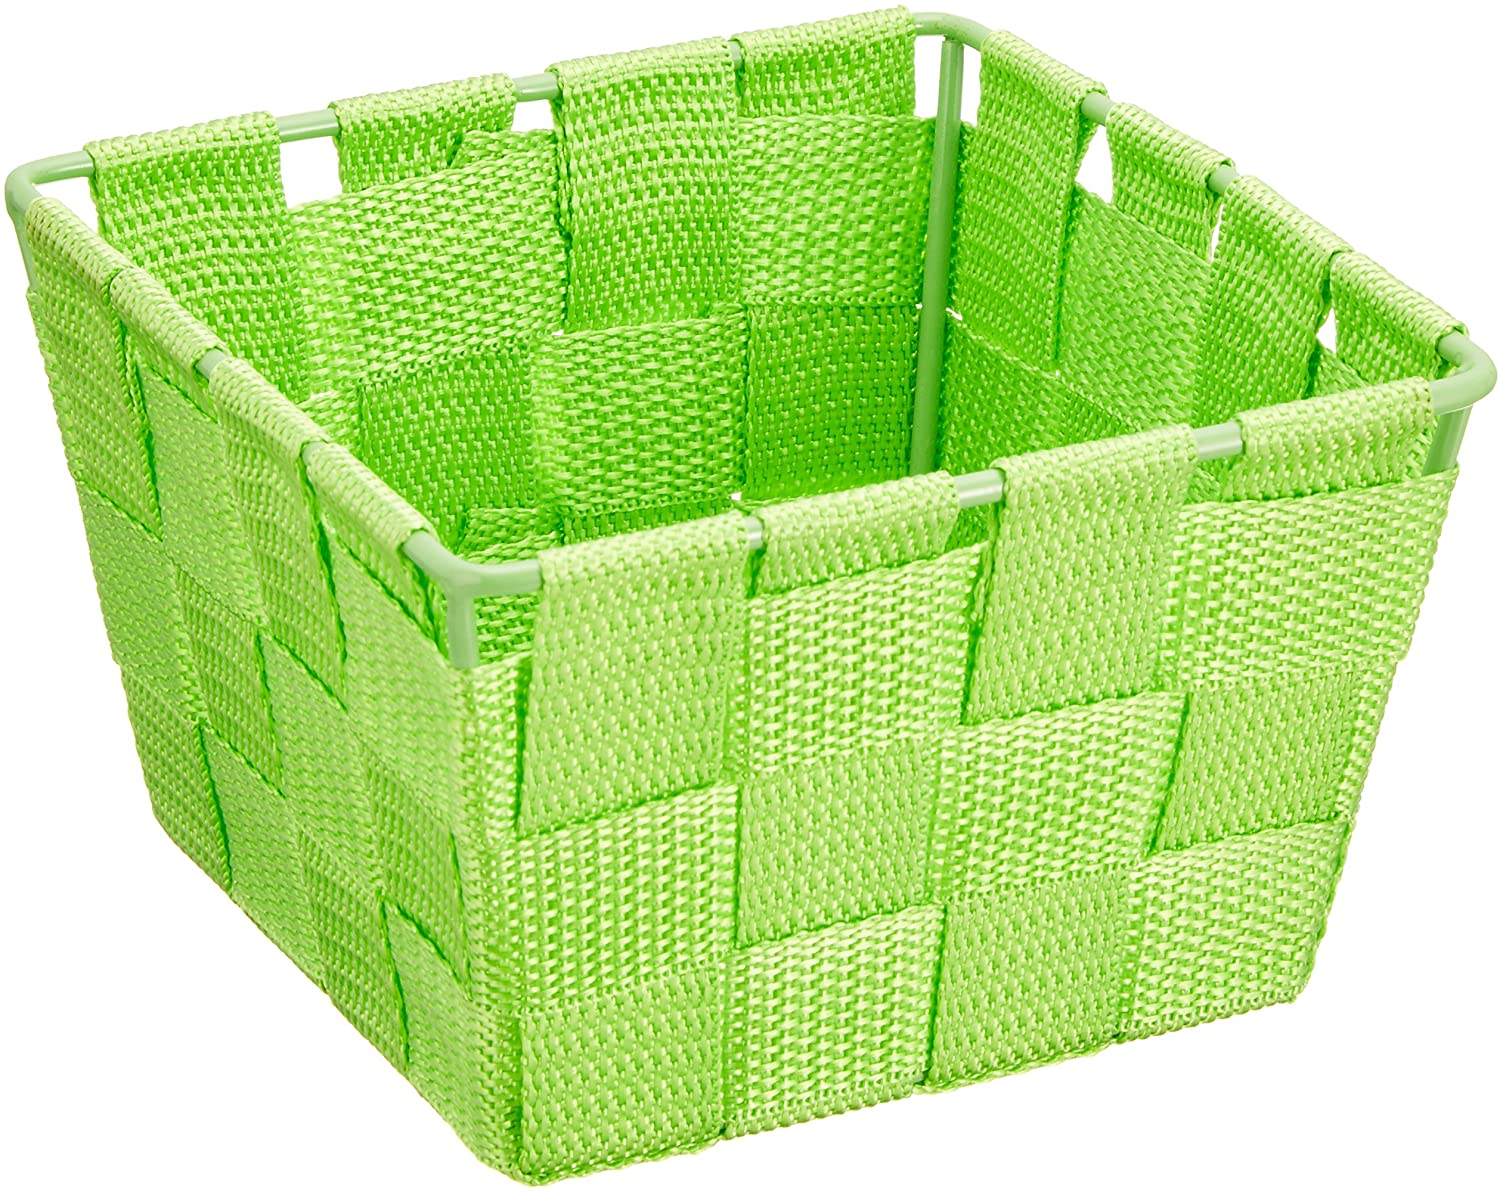 Aufbewahrungskorb Adria Mini Grün - Badkorb, quadratisch, Kunststoff-Geflecht, Polypropylen, 14 x 9 x 14 cm, Grün